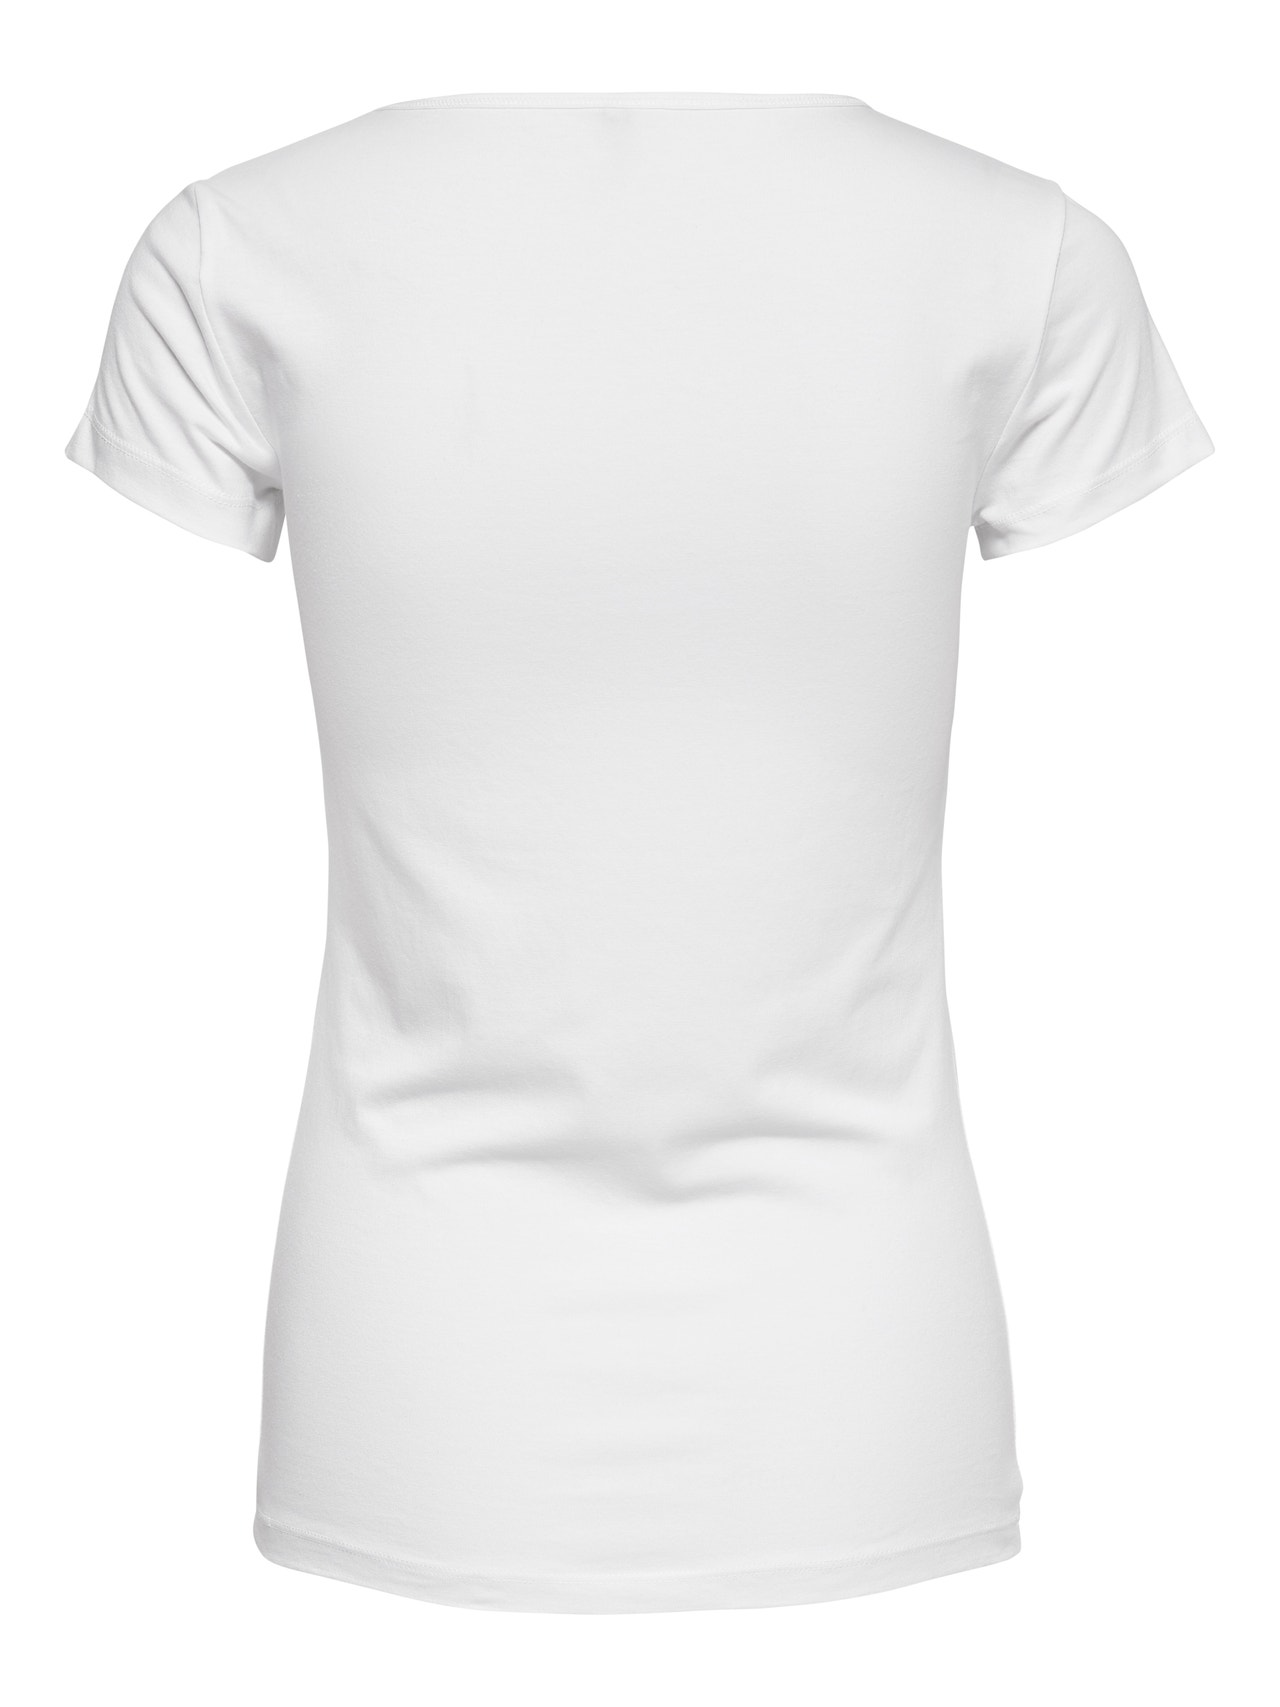 ONLY Basic T-Shirt -White - 15205059